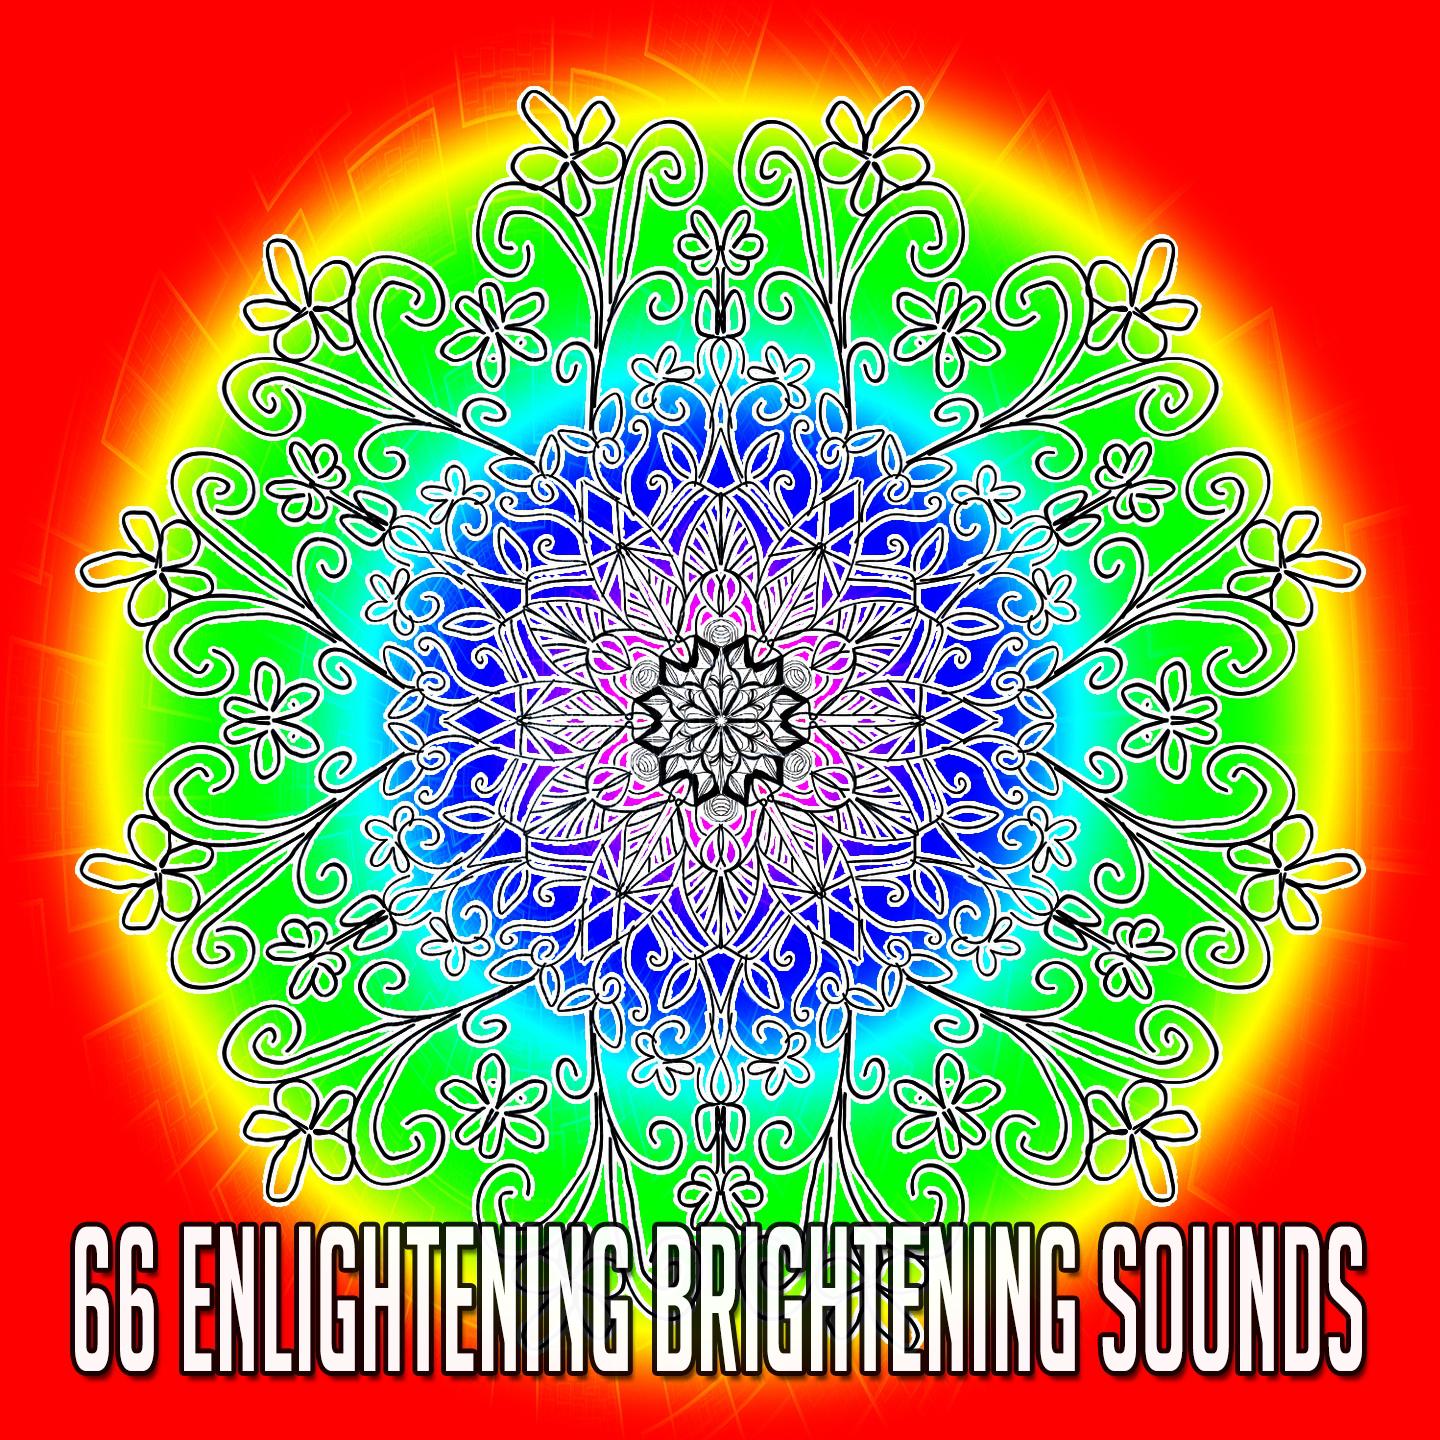 66 Enlightening Brightening Sounds